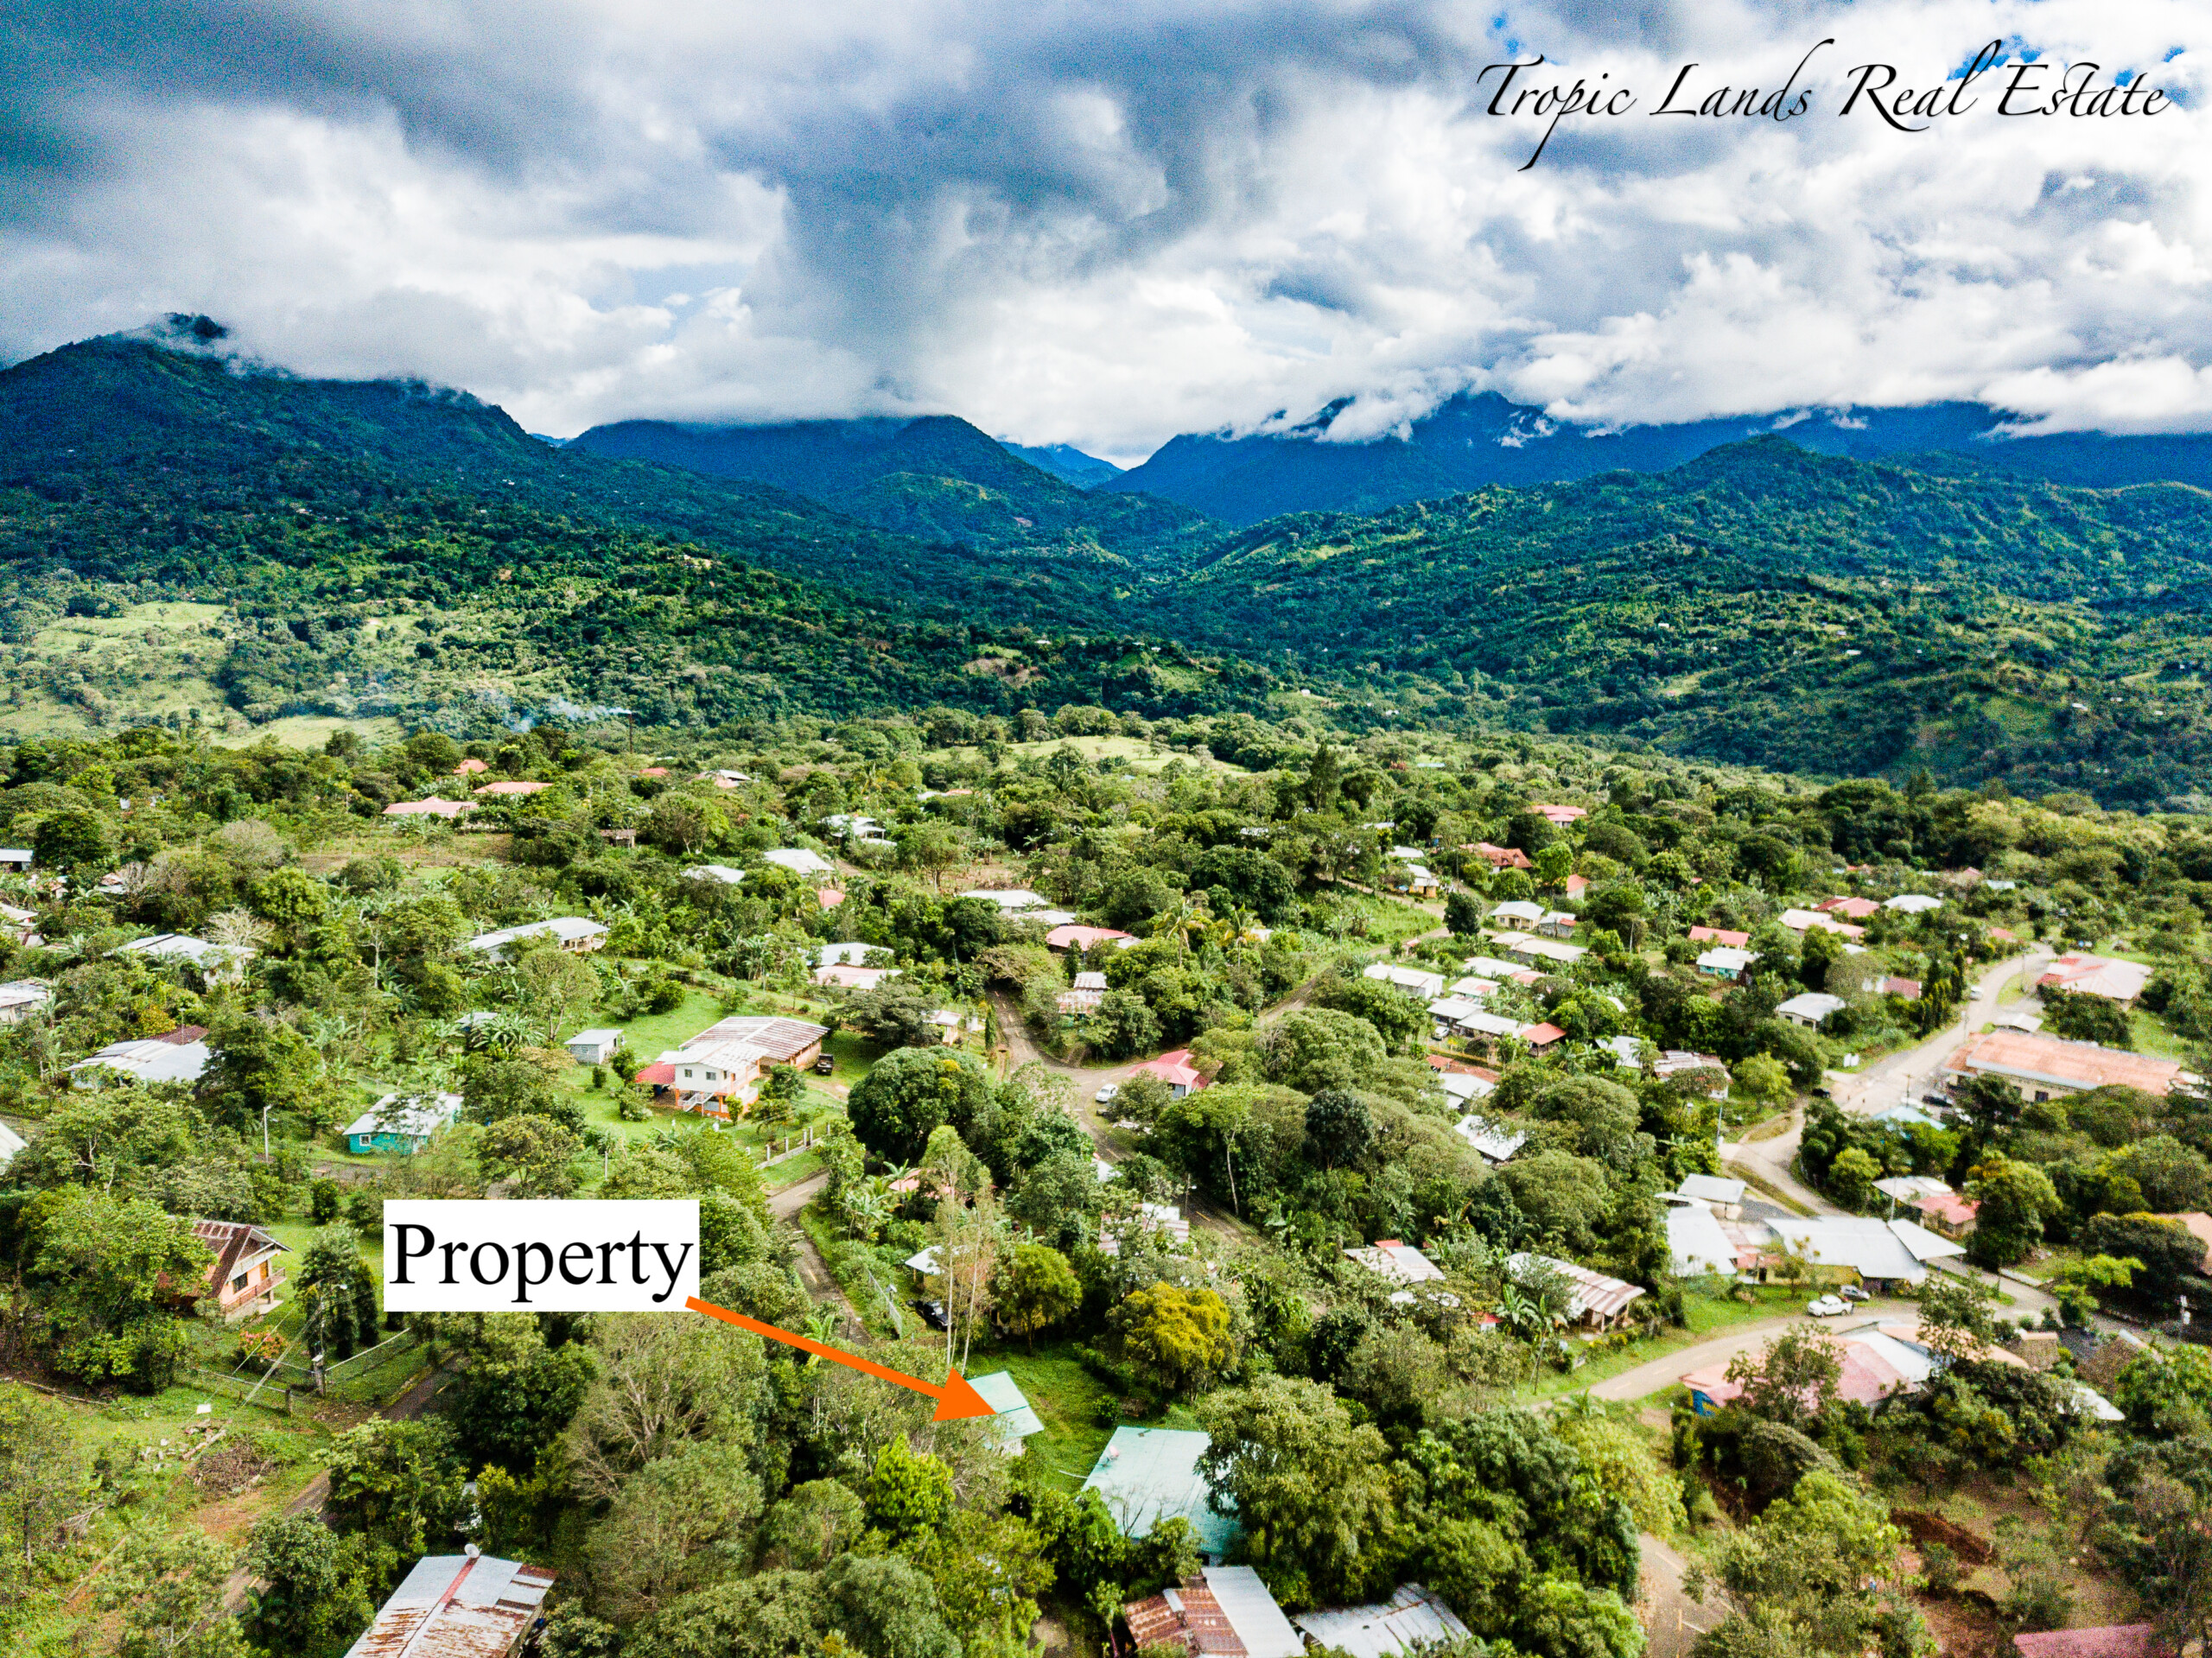 Property for sale in Santa Fe Veraguas Panama